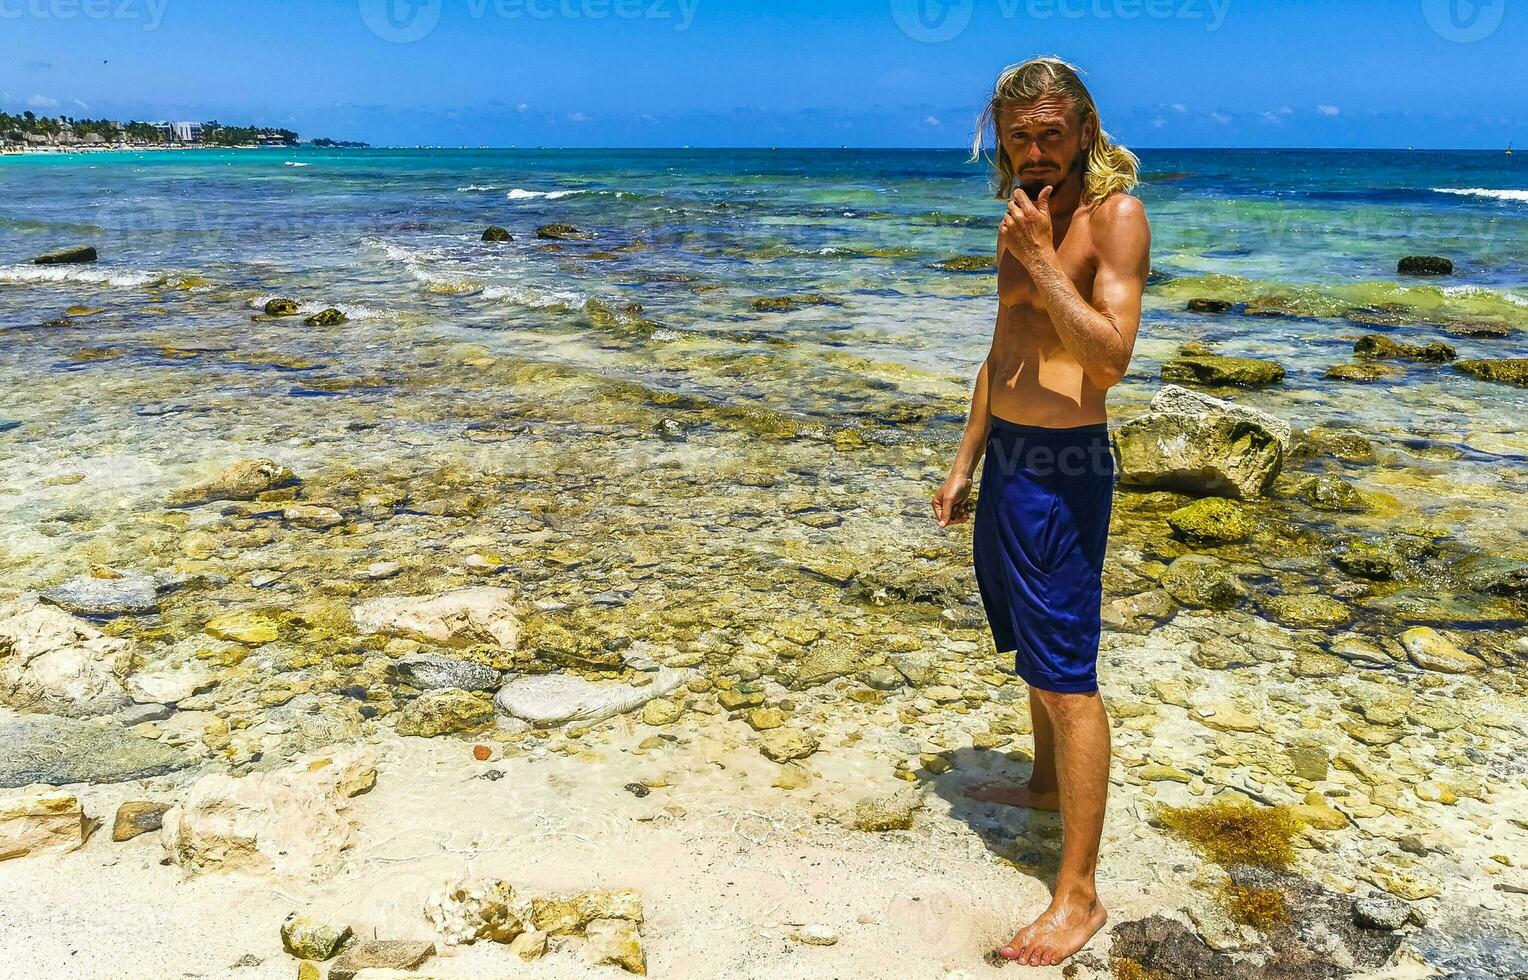 Masculin touristique en voyageant homme posant modèle playa del Carmen Mexique. photo